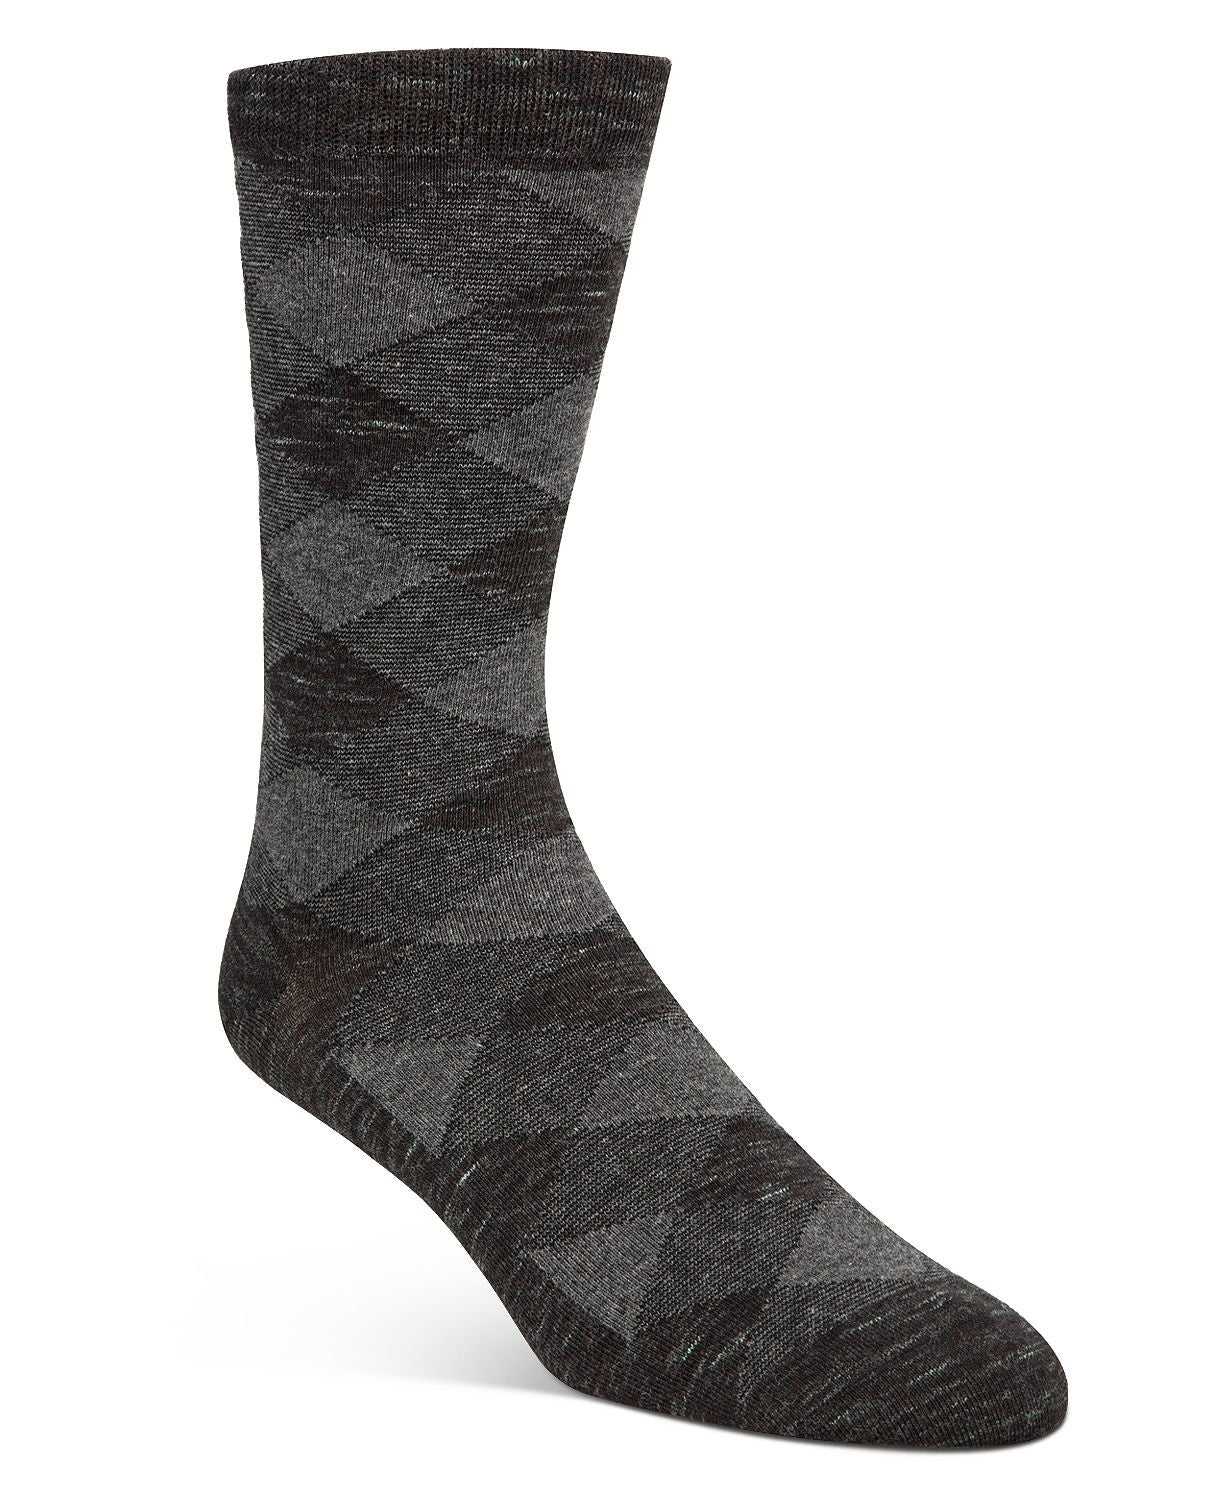 Cole Haan Diamond Plaid Socks Black/gray